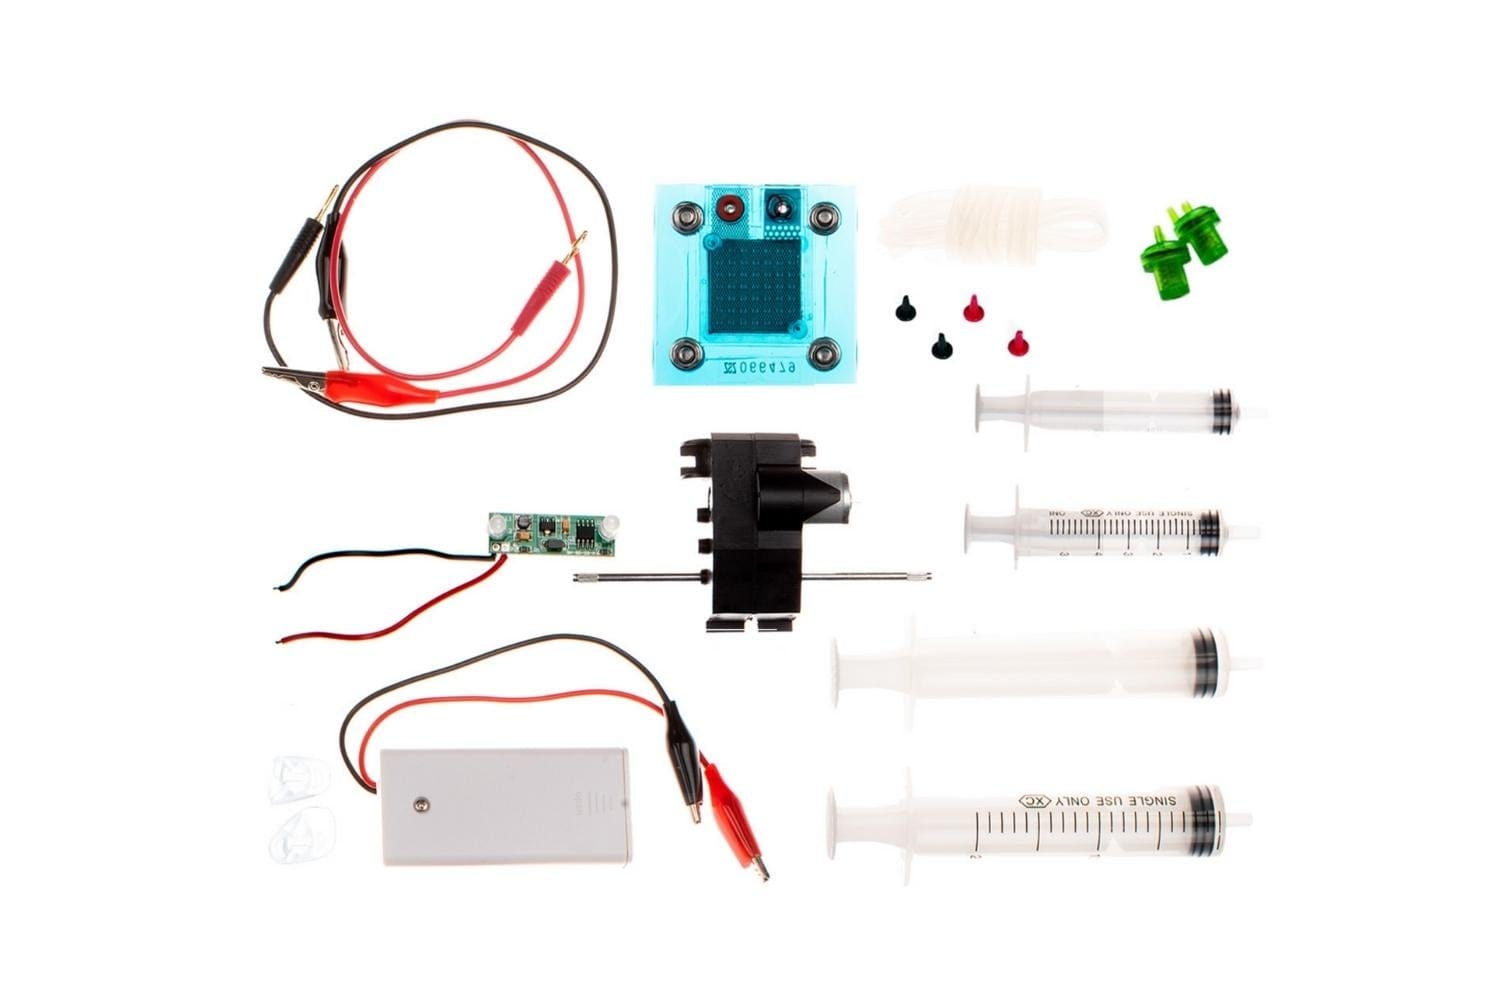 Arbor Scientific DIY Fuel Cell Science Kit